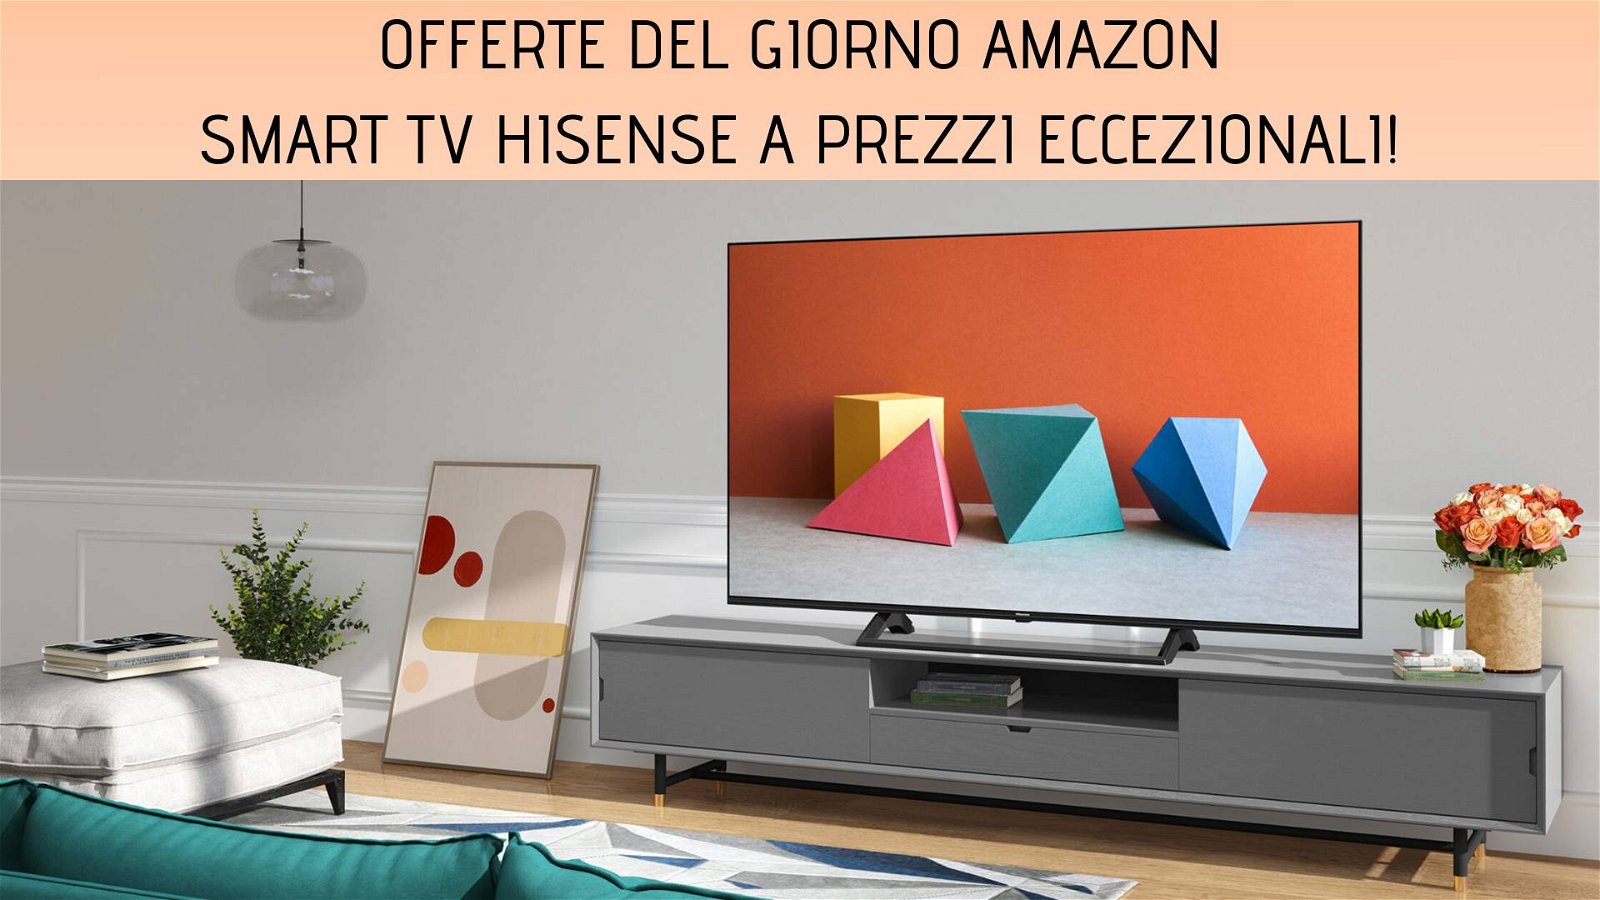 Immagine di Offerte del giorno Amazon: tanti sconti su smart TV ed elettrodomestici Hisense